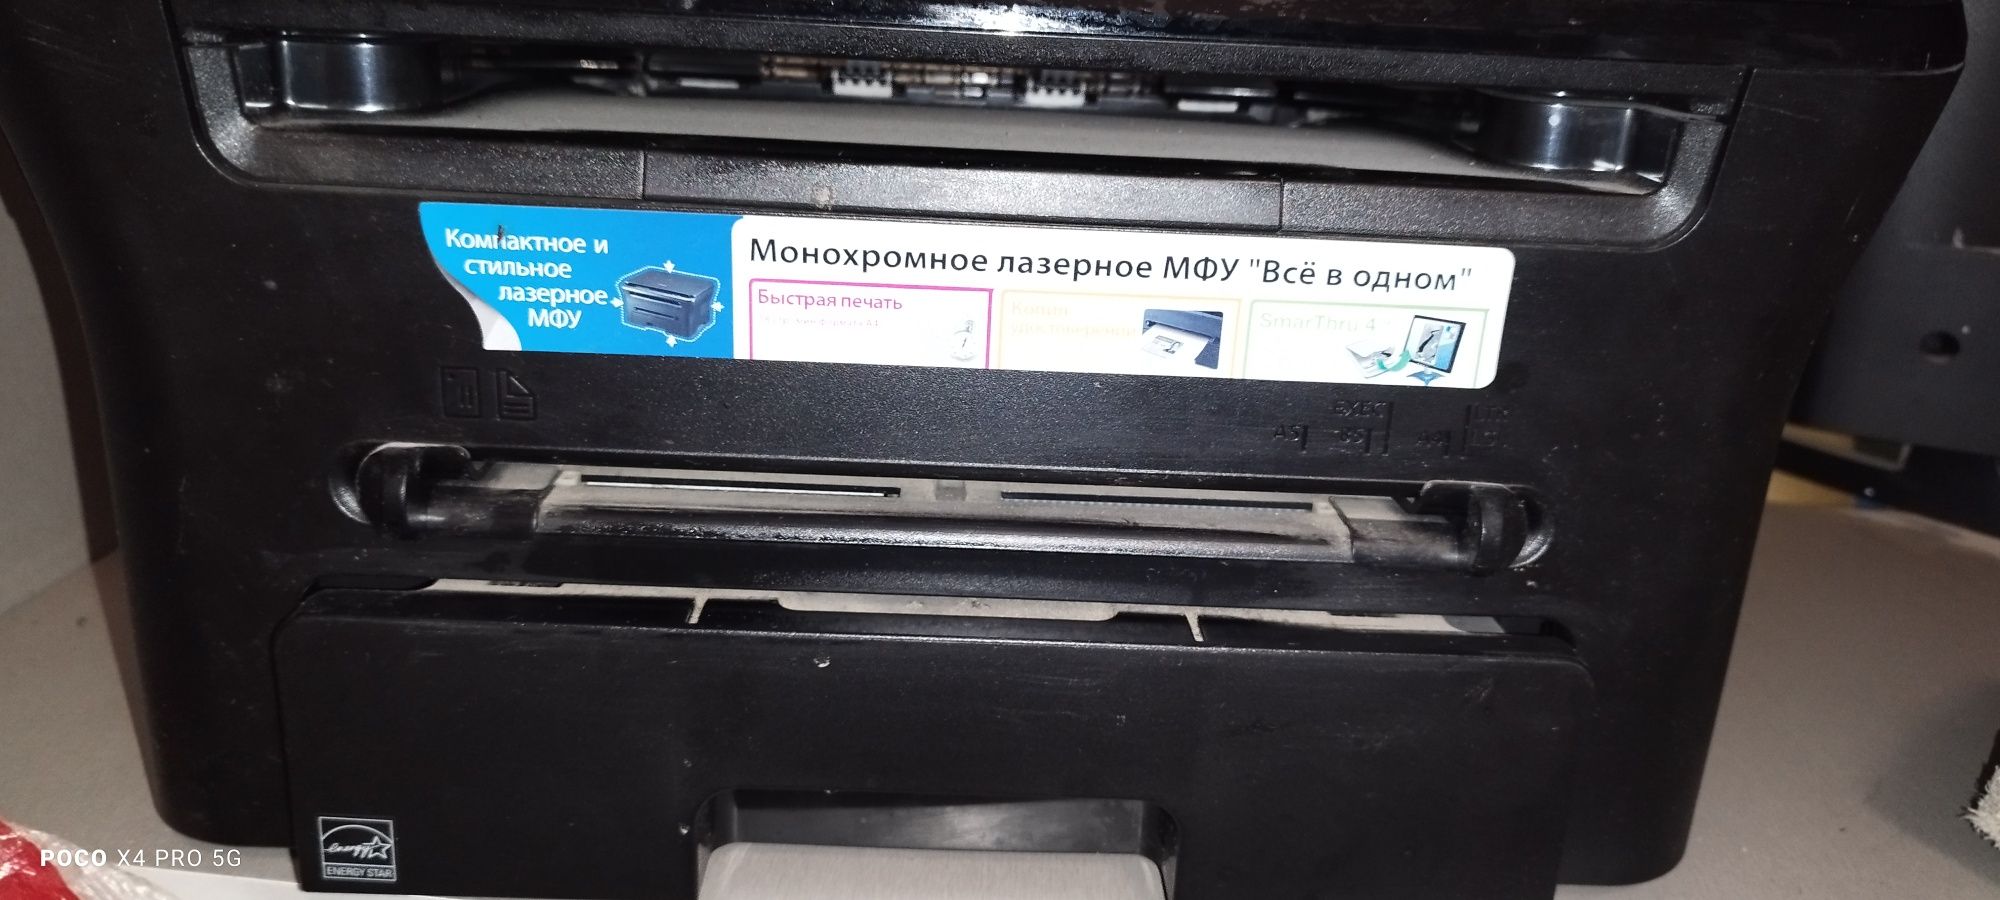 Принтер 3 в 1. Сканер, ксерокс МФУ